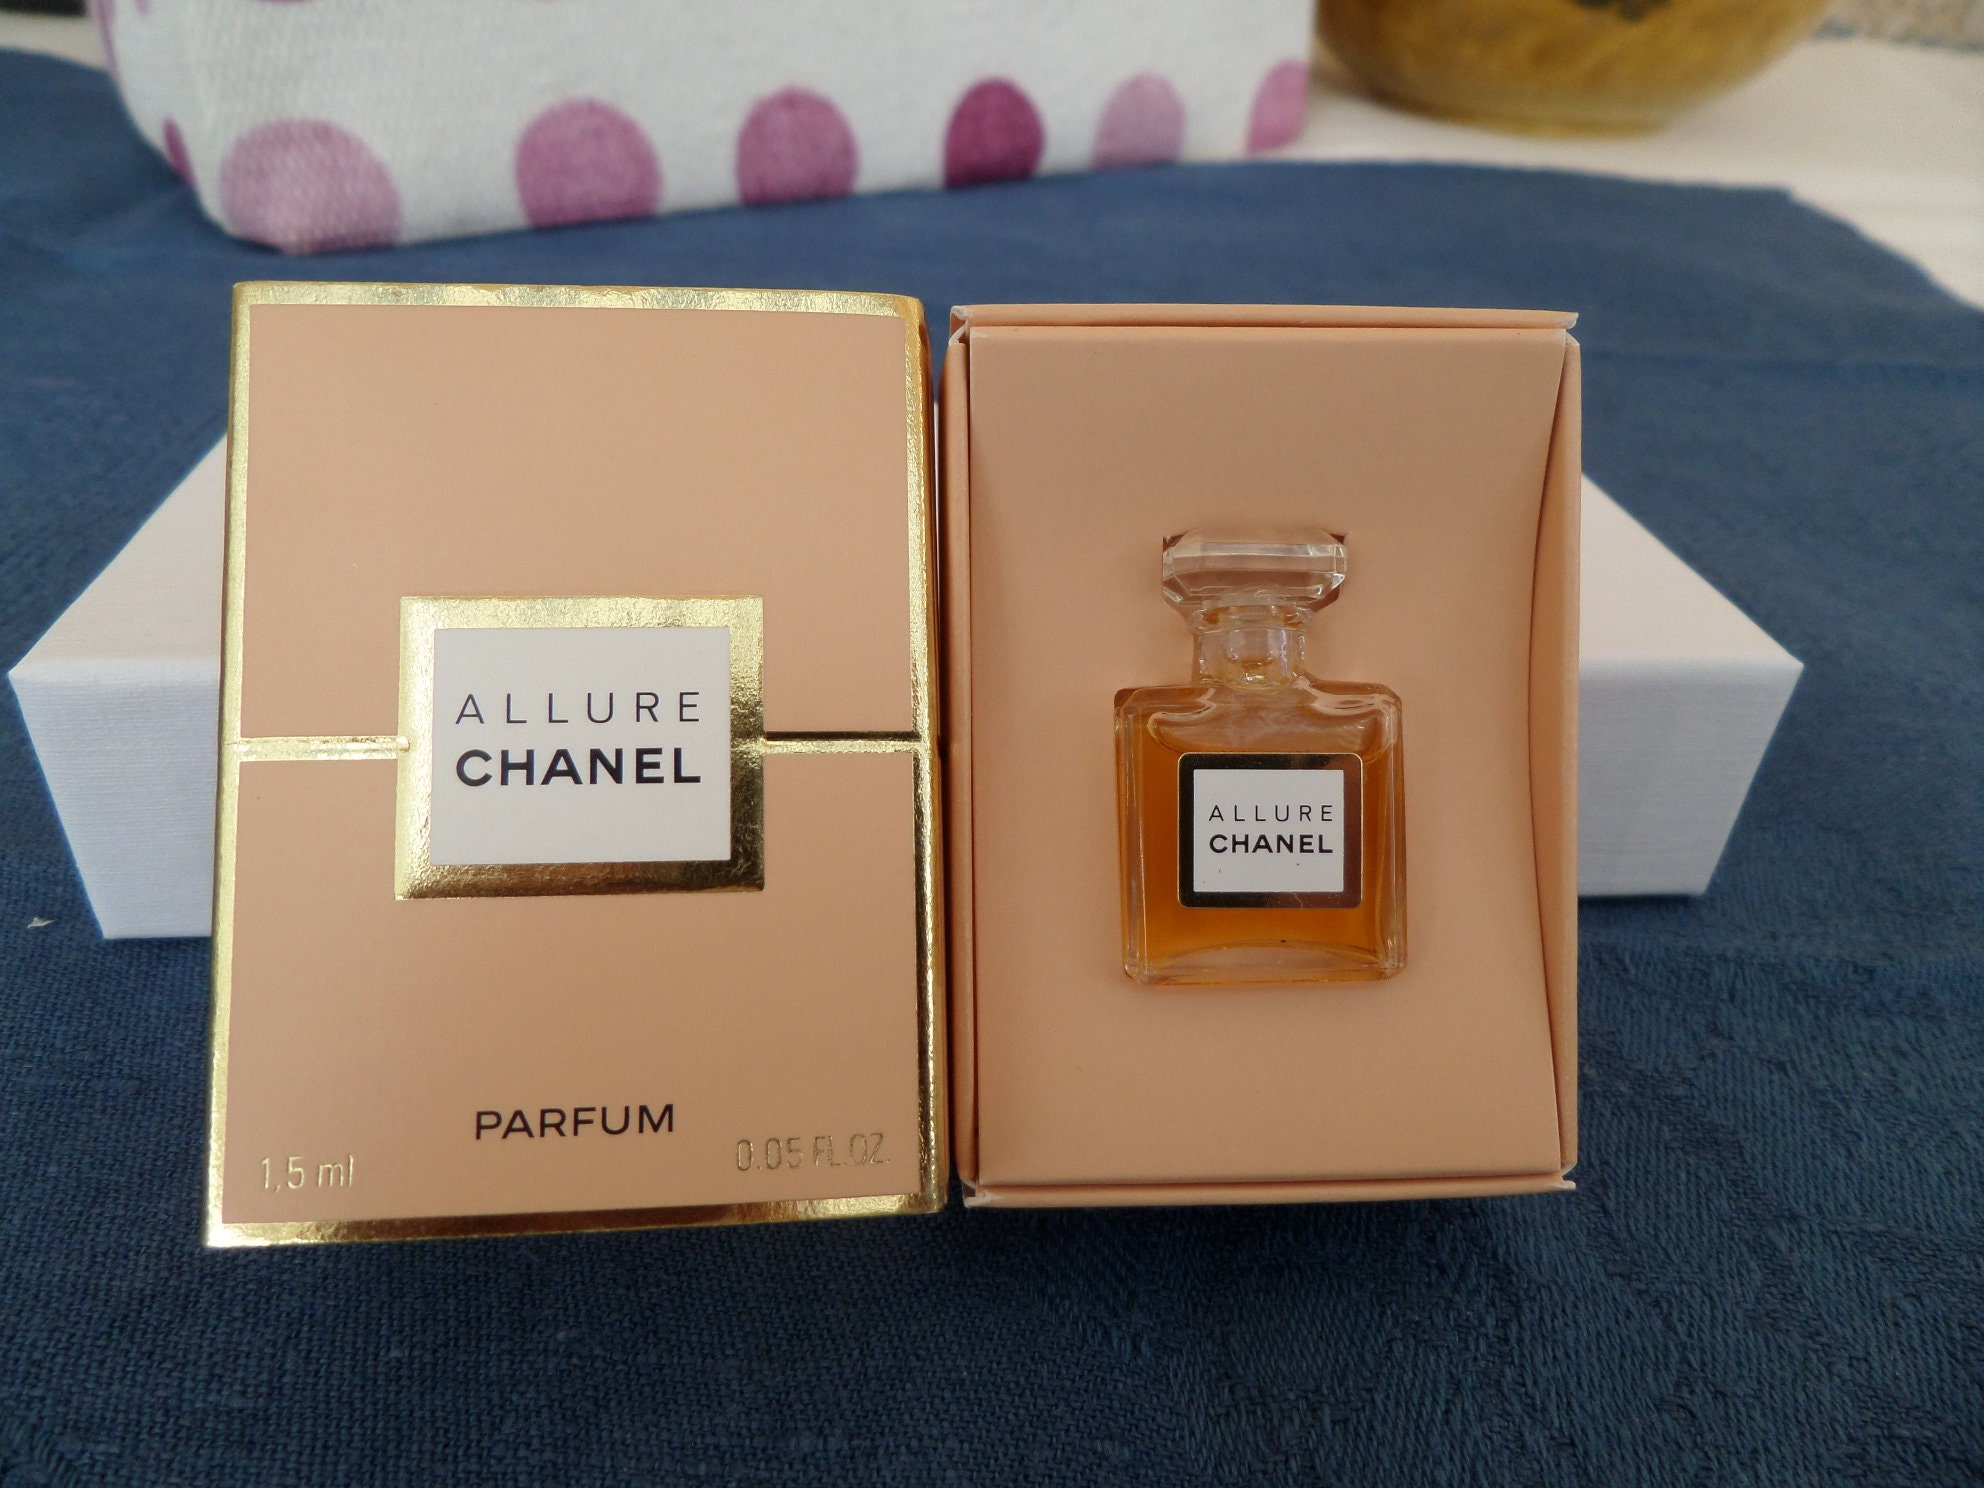 Miniature Chanel Gabrielle Essence 5ml Eau De Parfum Splash 